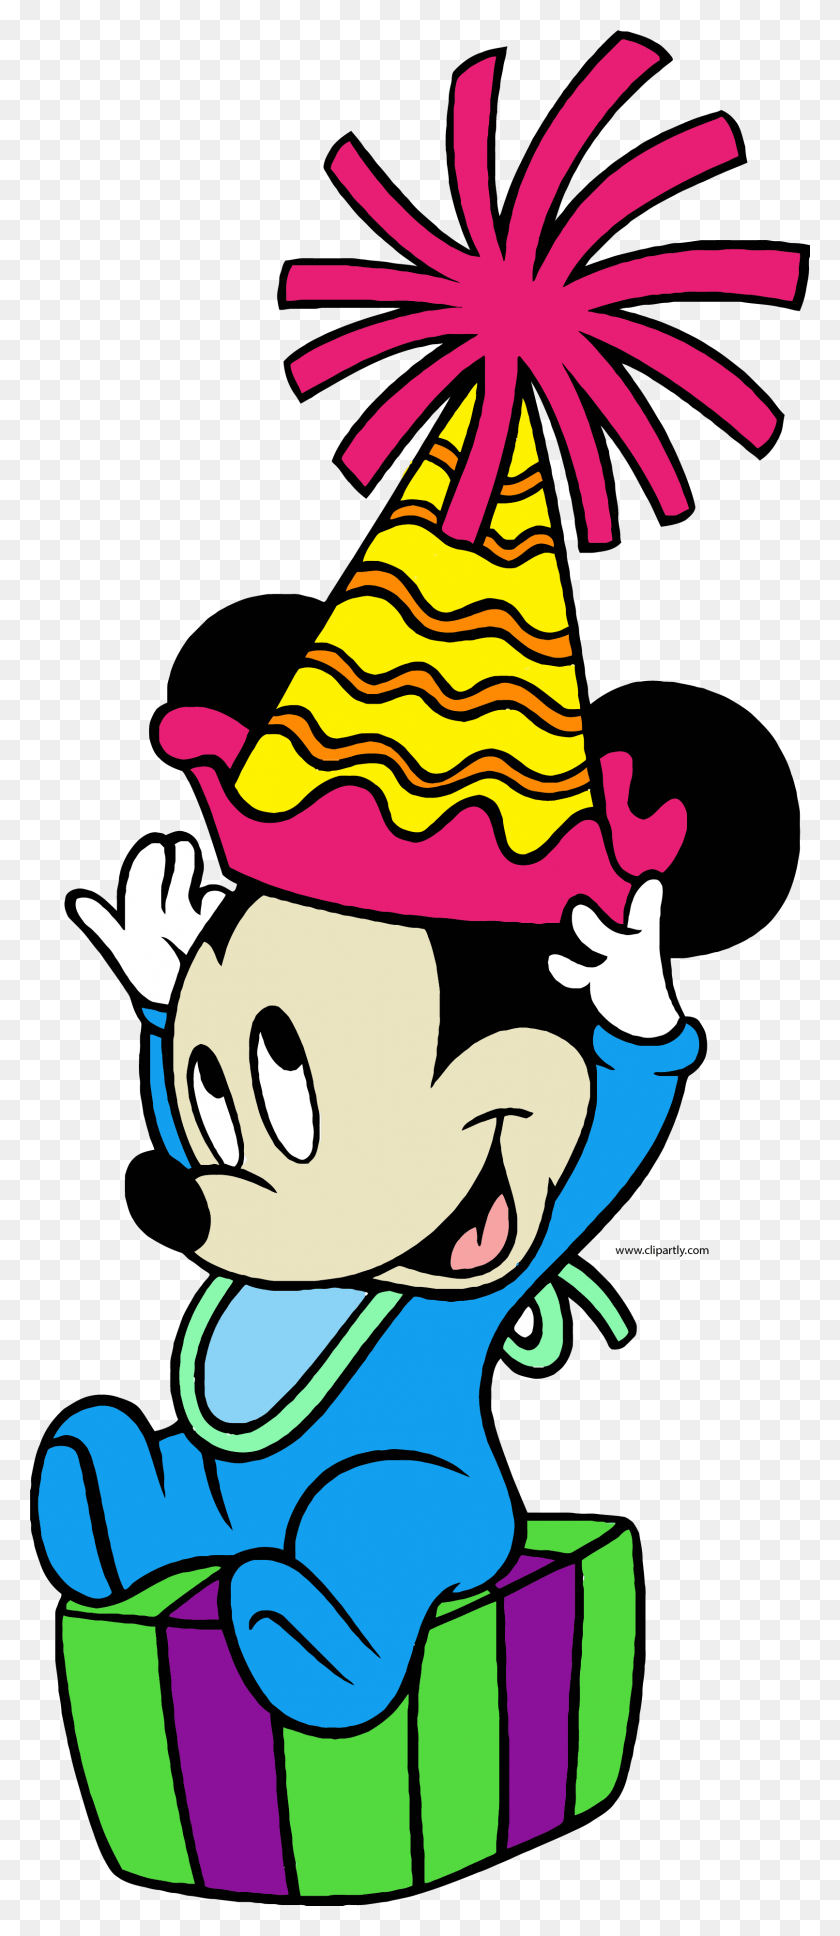 1611x3876 Baby Mickey Party Hat Suprise Клипарт С Днем Рождения Микки Маус Baby, Одежда, Одежда, Шляпа Png Скачать